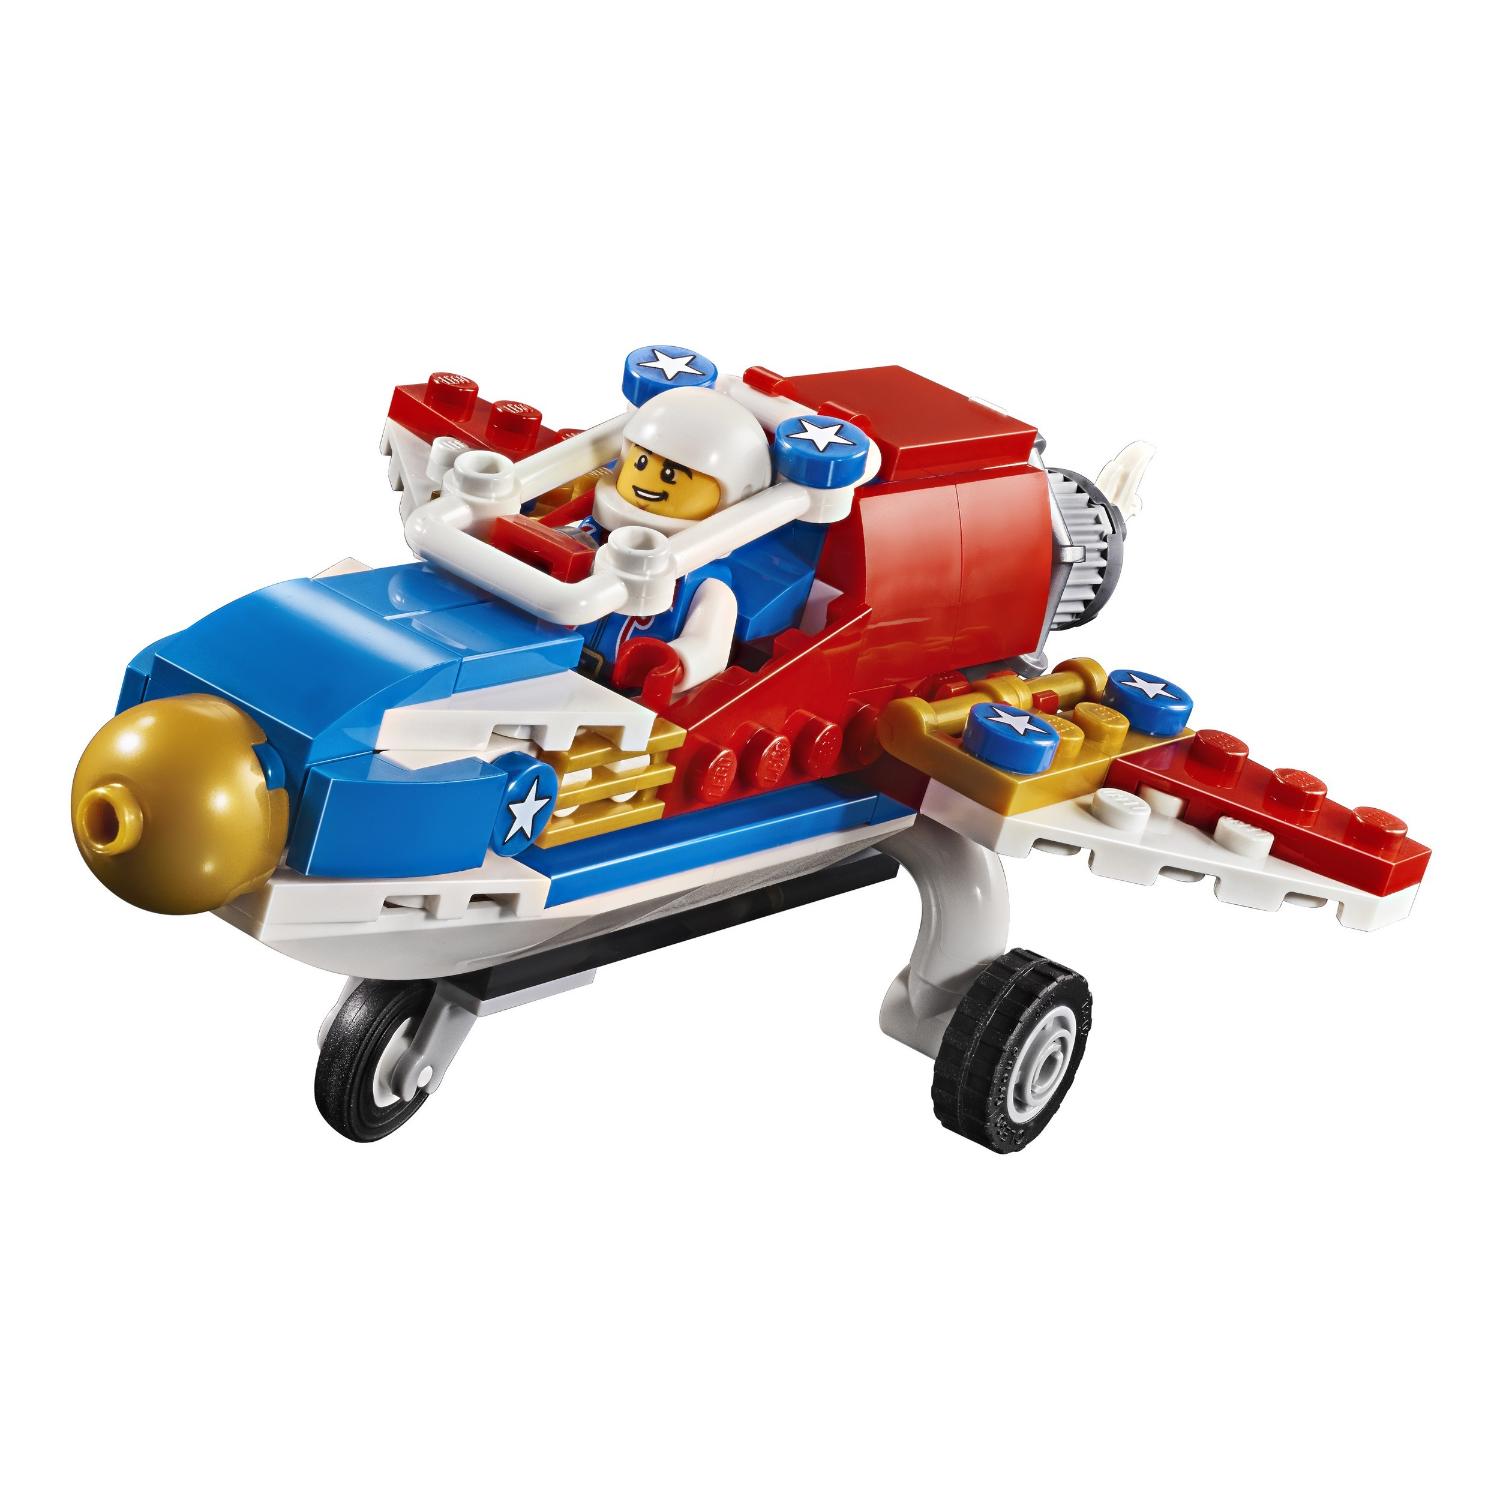 Конструктор Lego Creator - Самолет для крутых трюков  